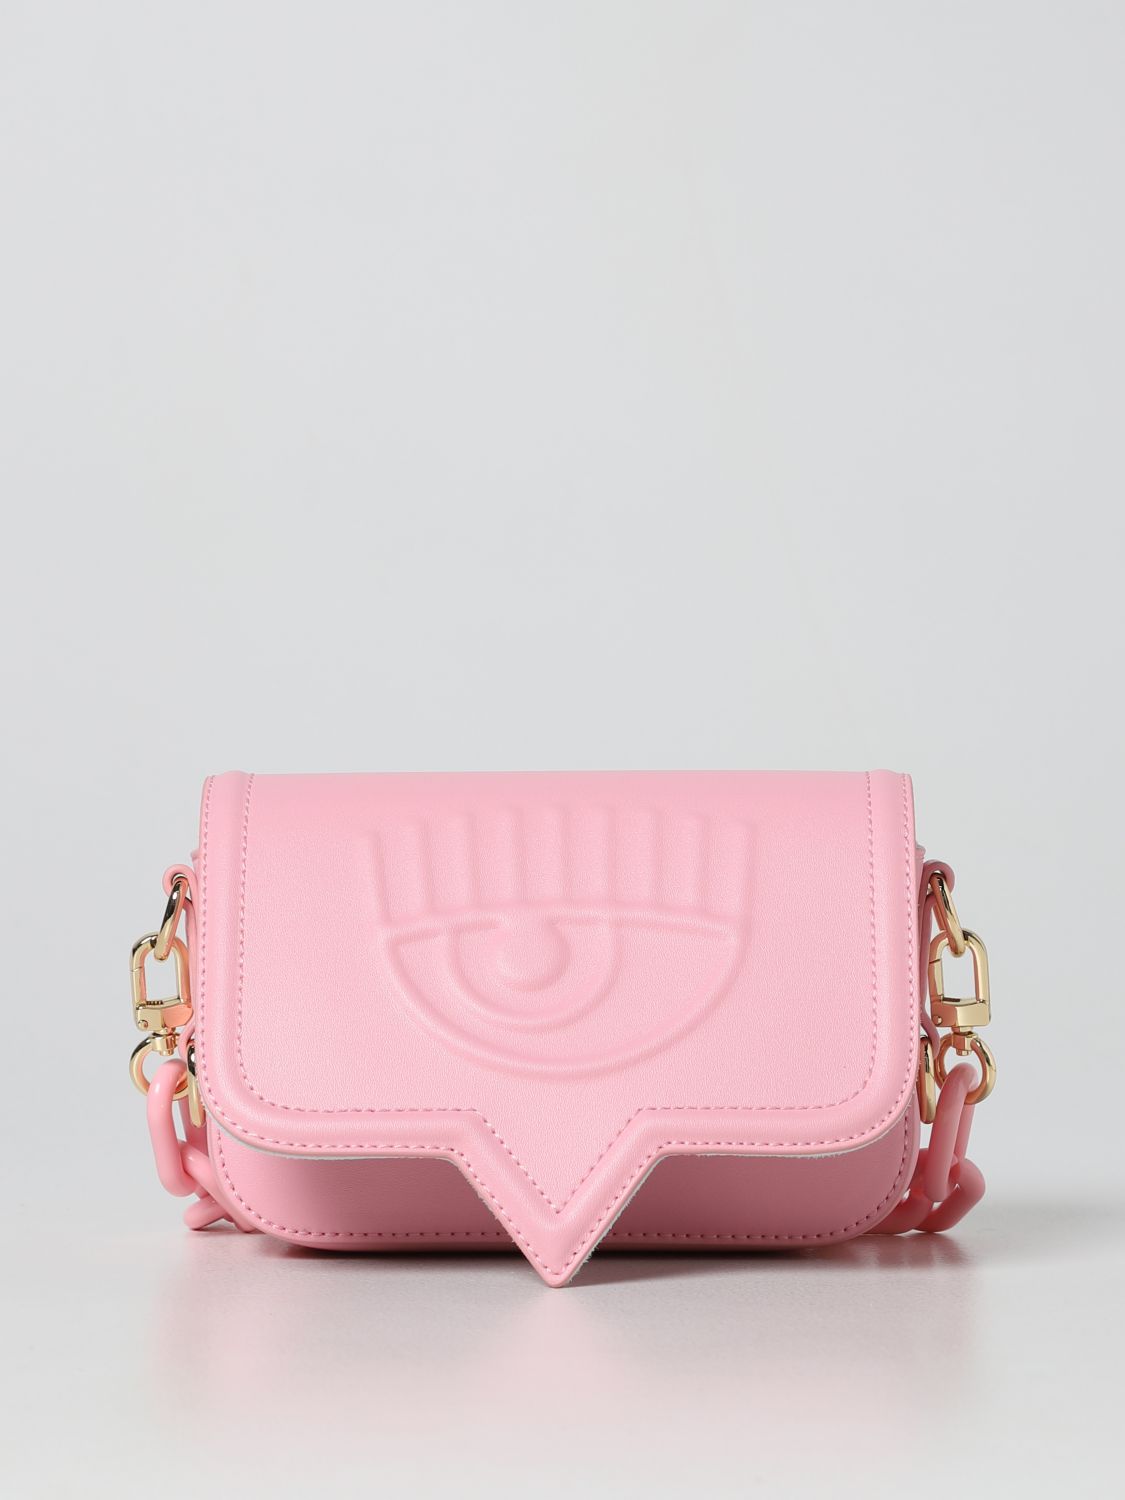 Chiara Ferragni Outlet: mini bag for woman - Pink | Chiara Ferragni ...